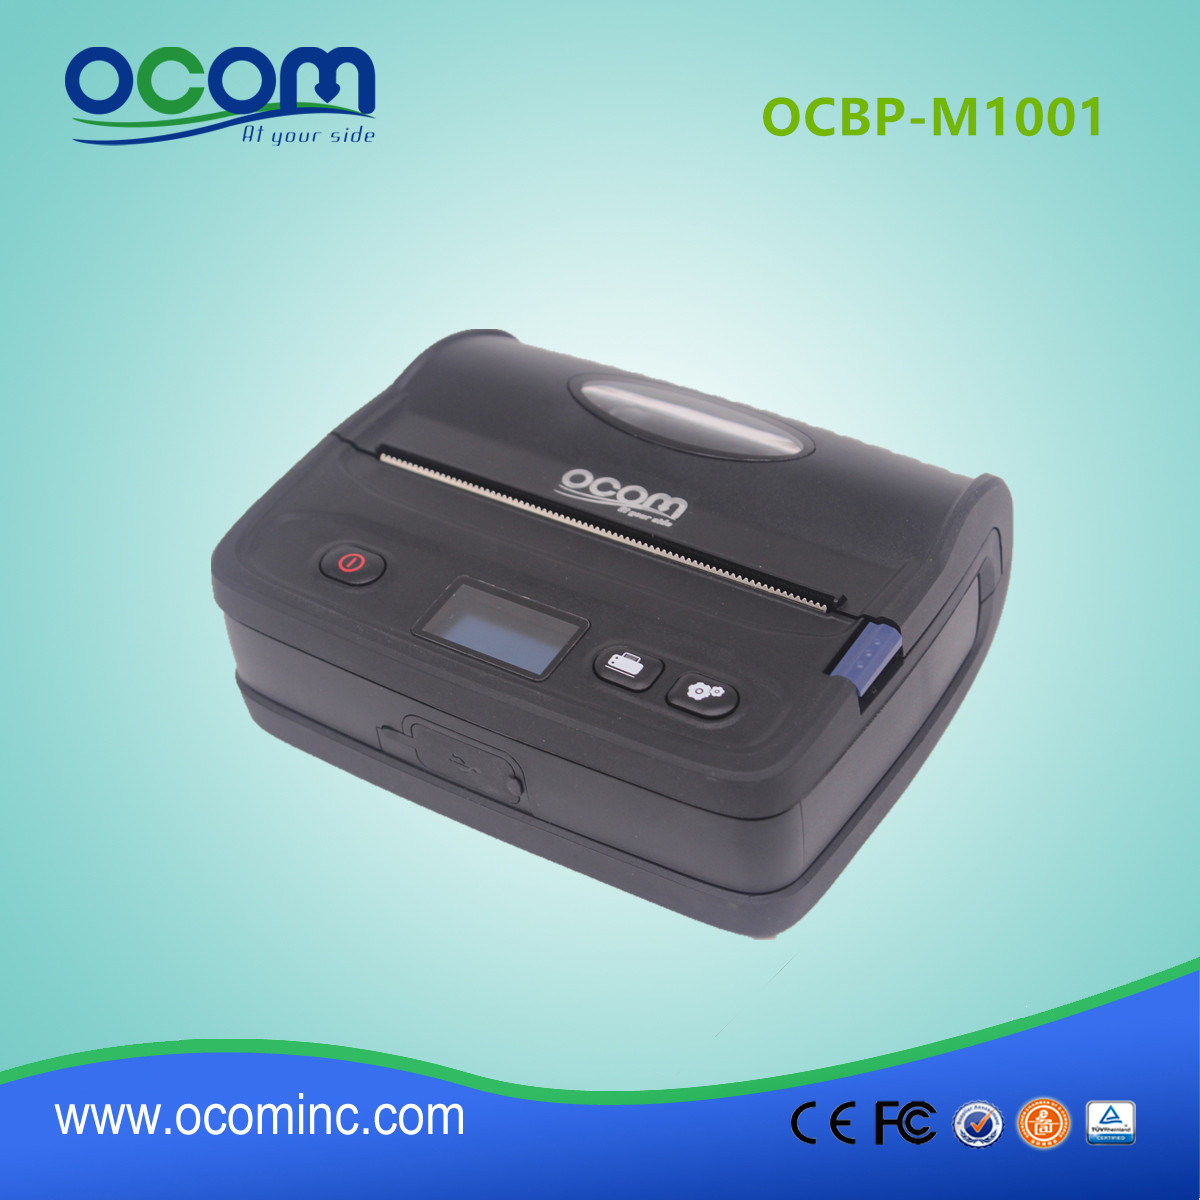 OCBP-M1001 4pollici Bluetooth stampante portatile di etichette termica diretta